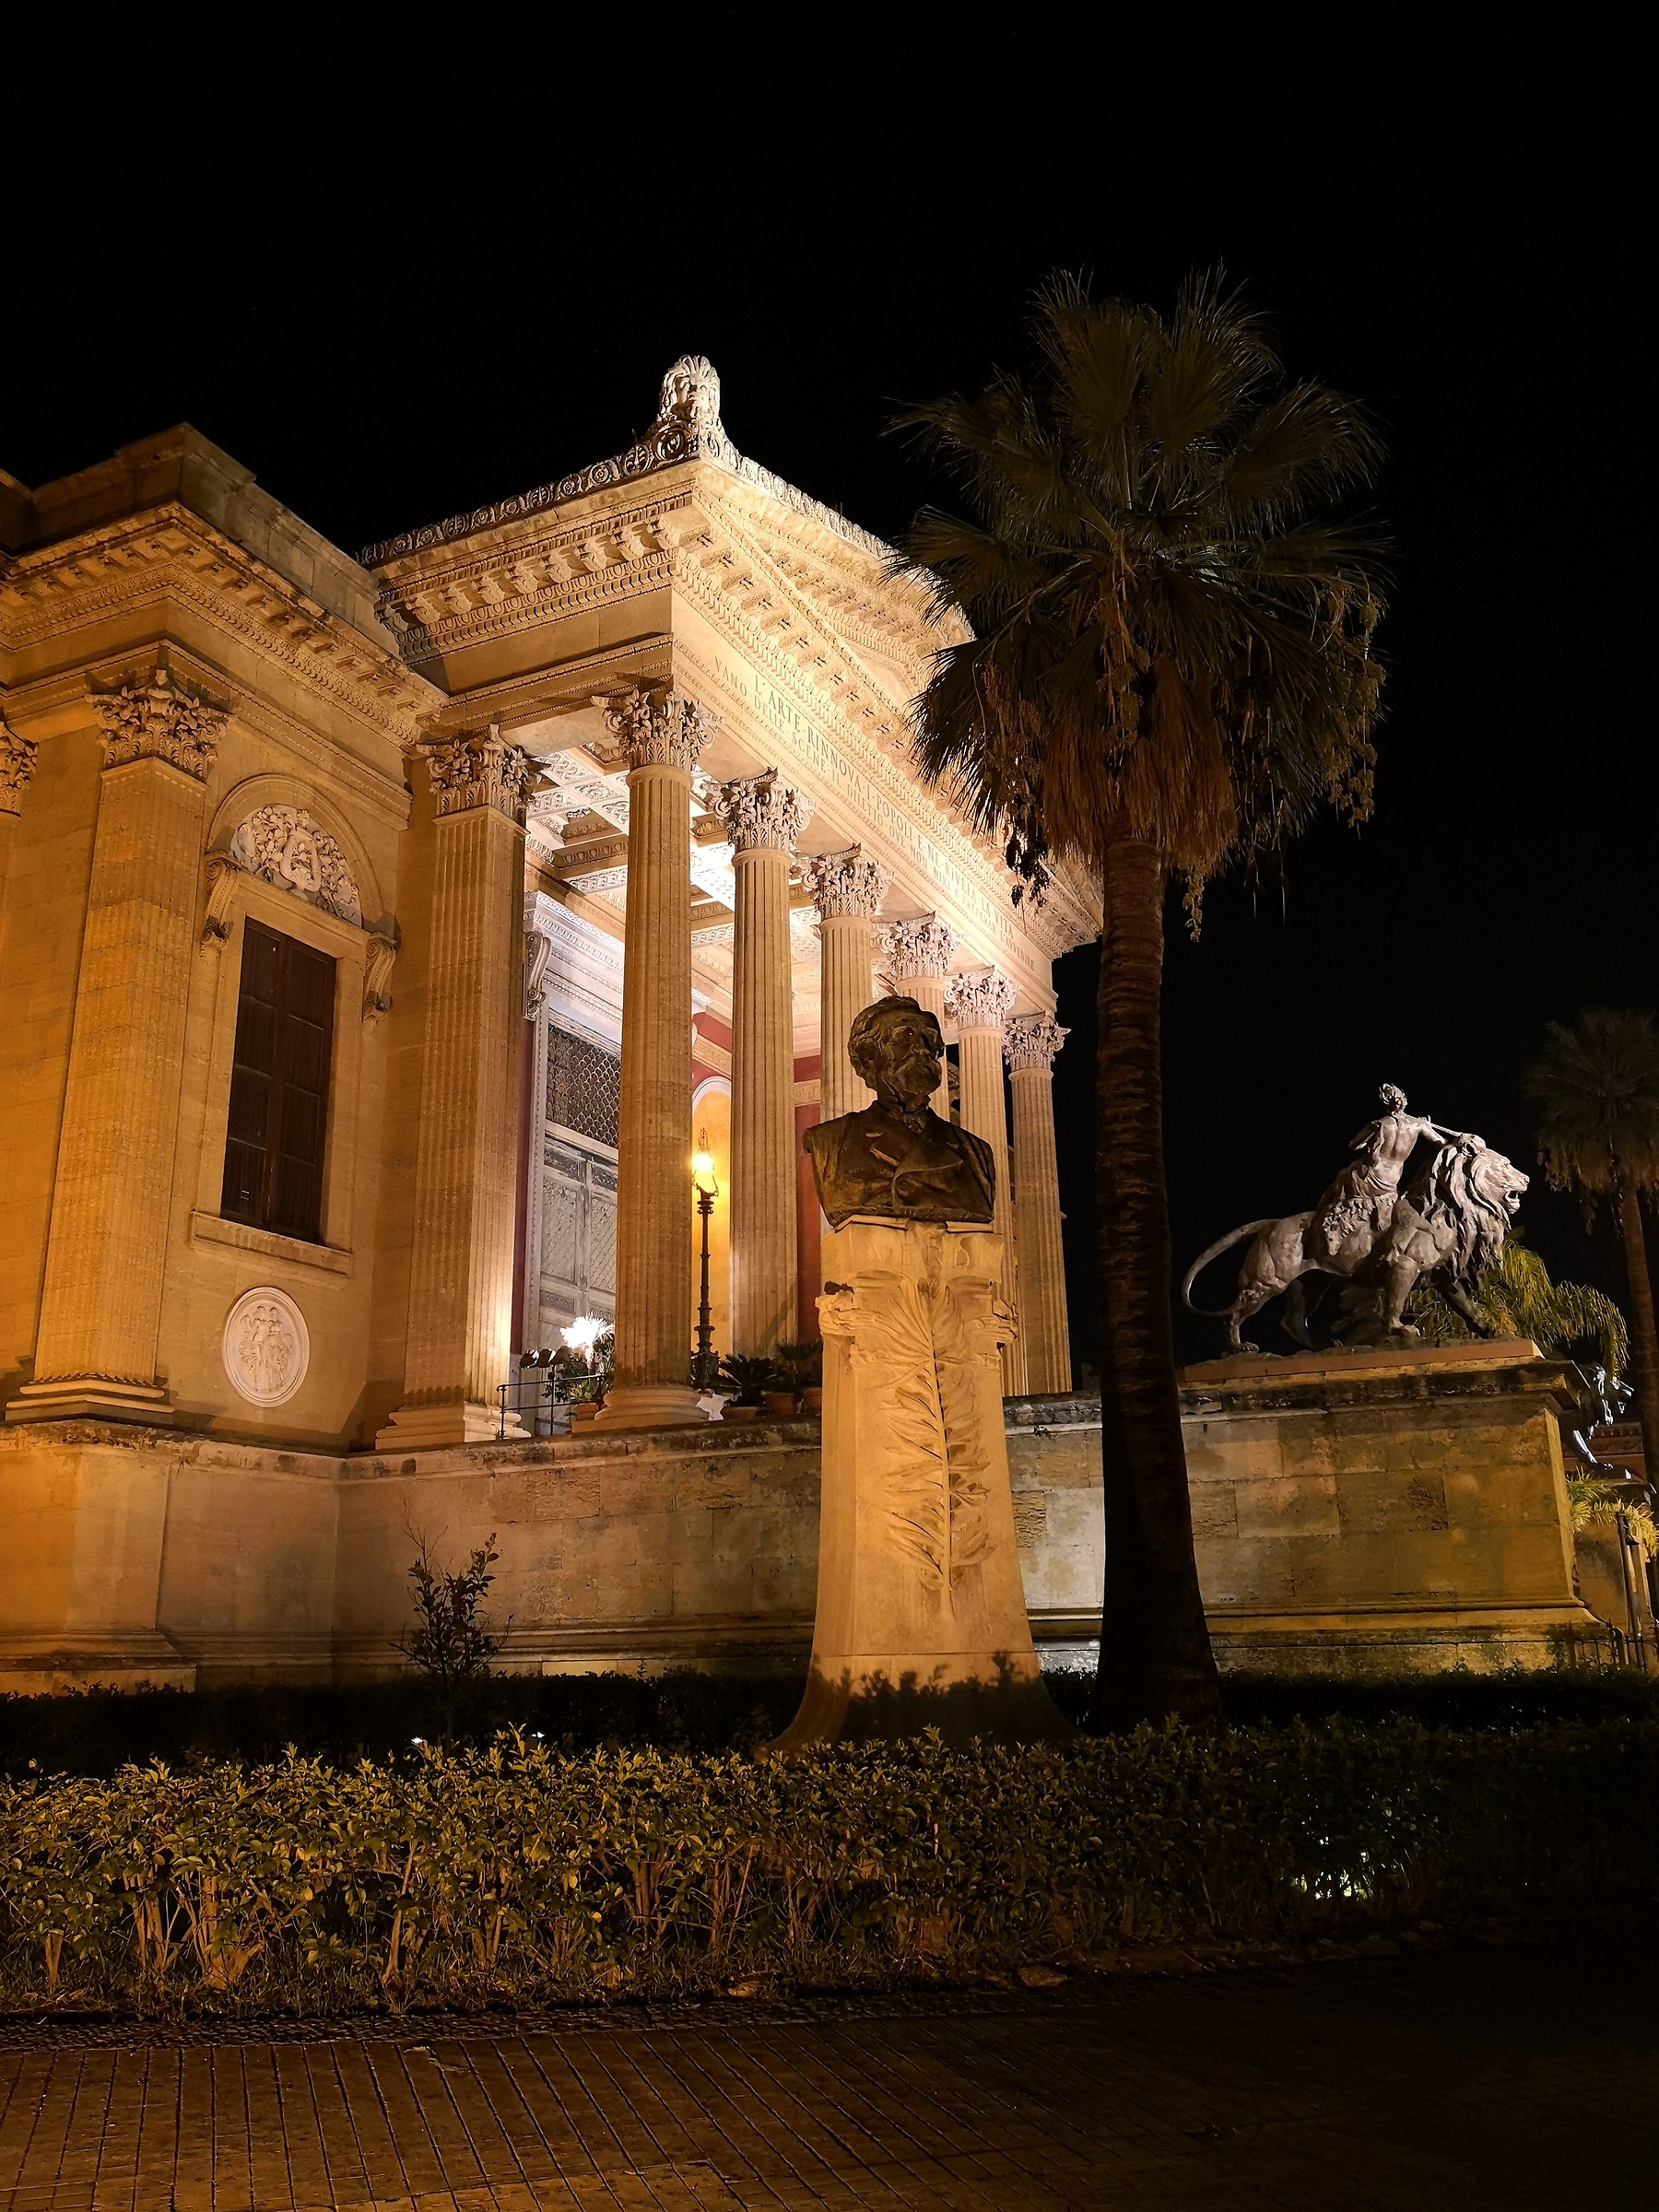 The Teatro Massimo in Palermo...